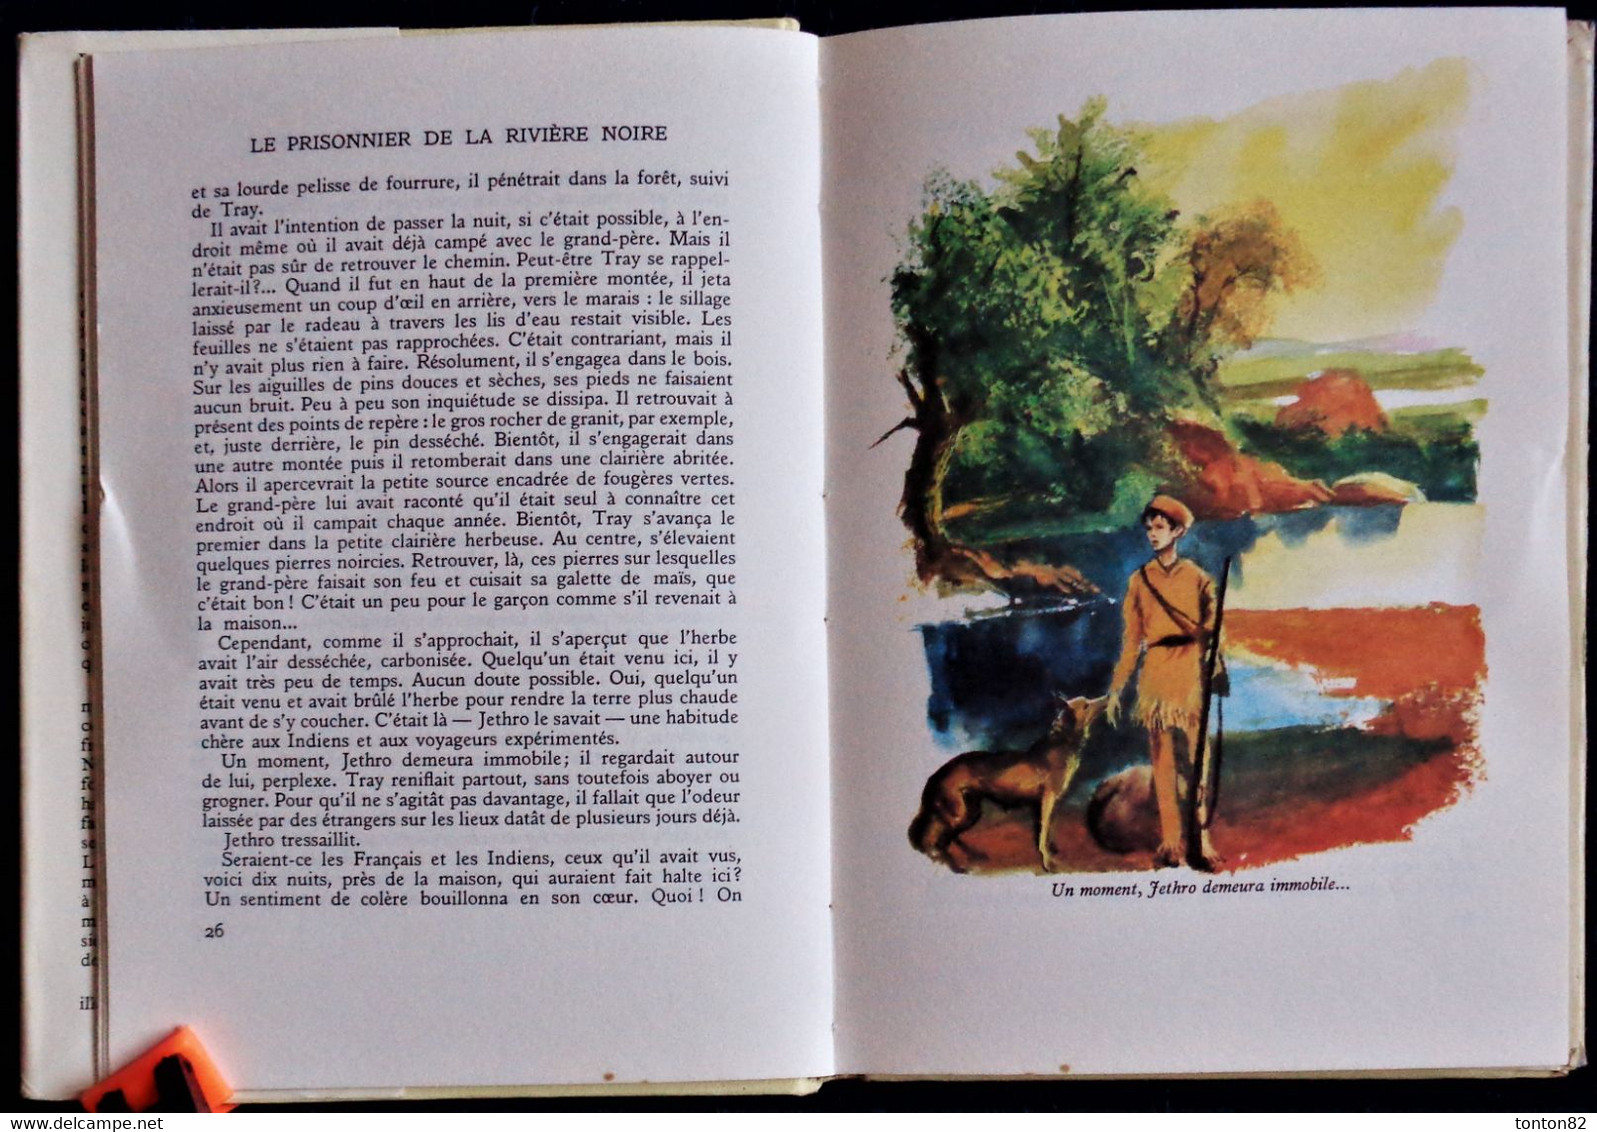 West Lathrop - Le Prisonnier de la Rivière Noire - Bibliothèque Rouge et Or Souveraine n° 608 - ( 1960 ) .